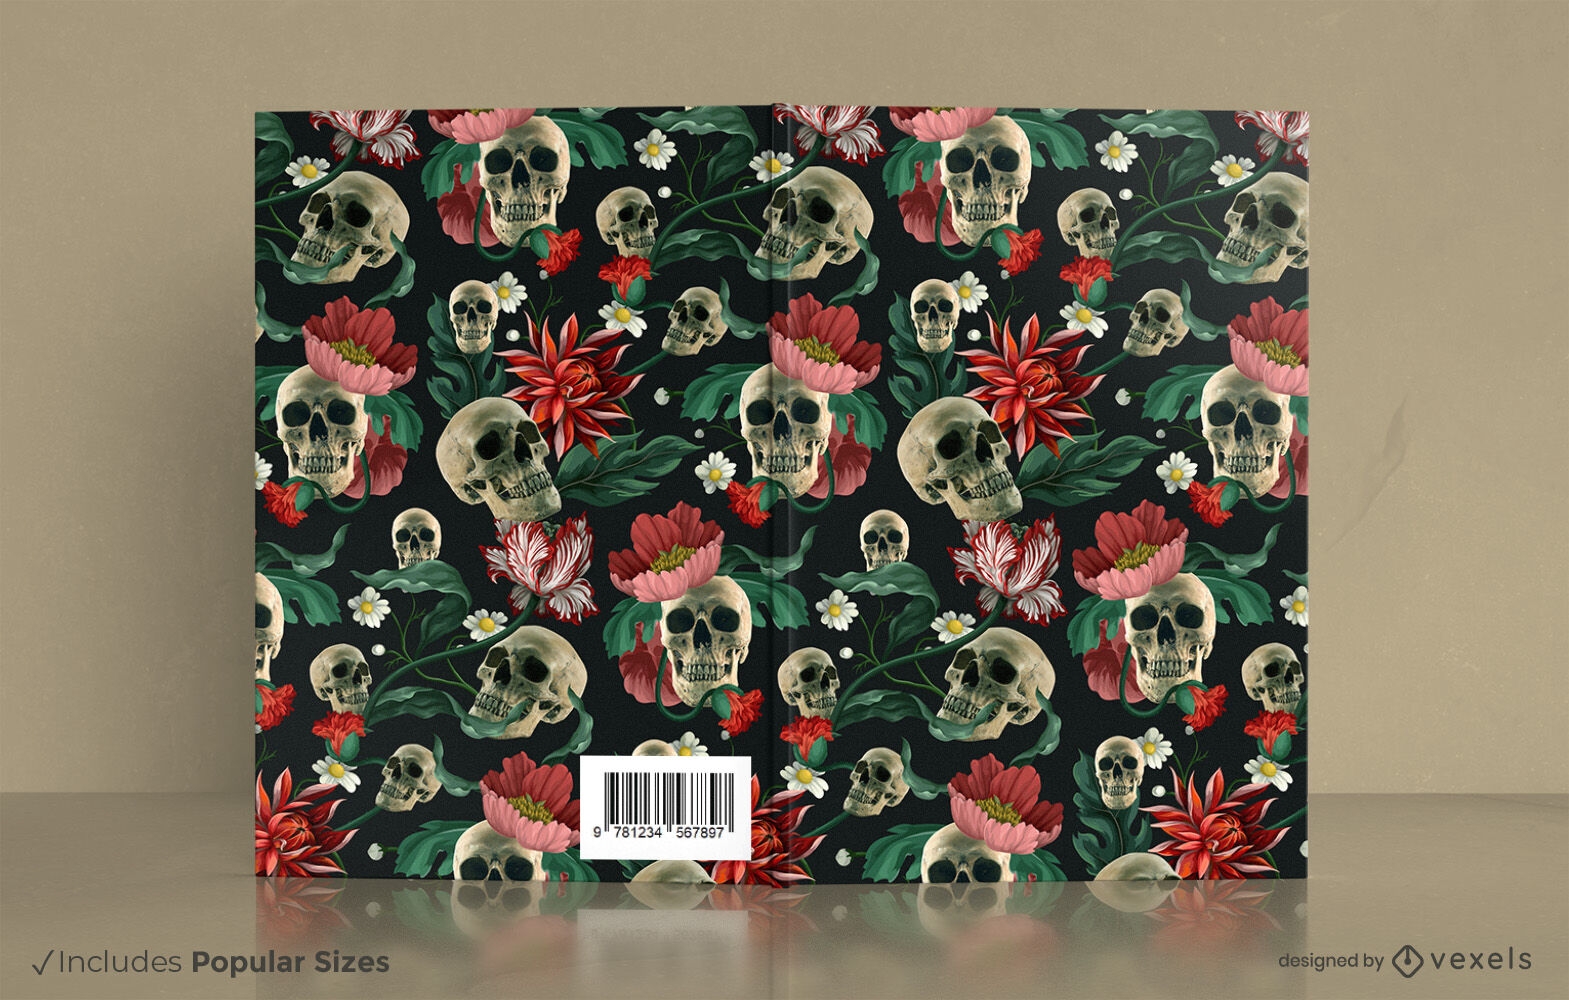 Diseño de portada de libro de calaveras y flores.